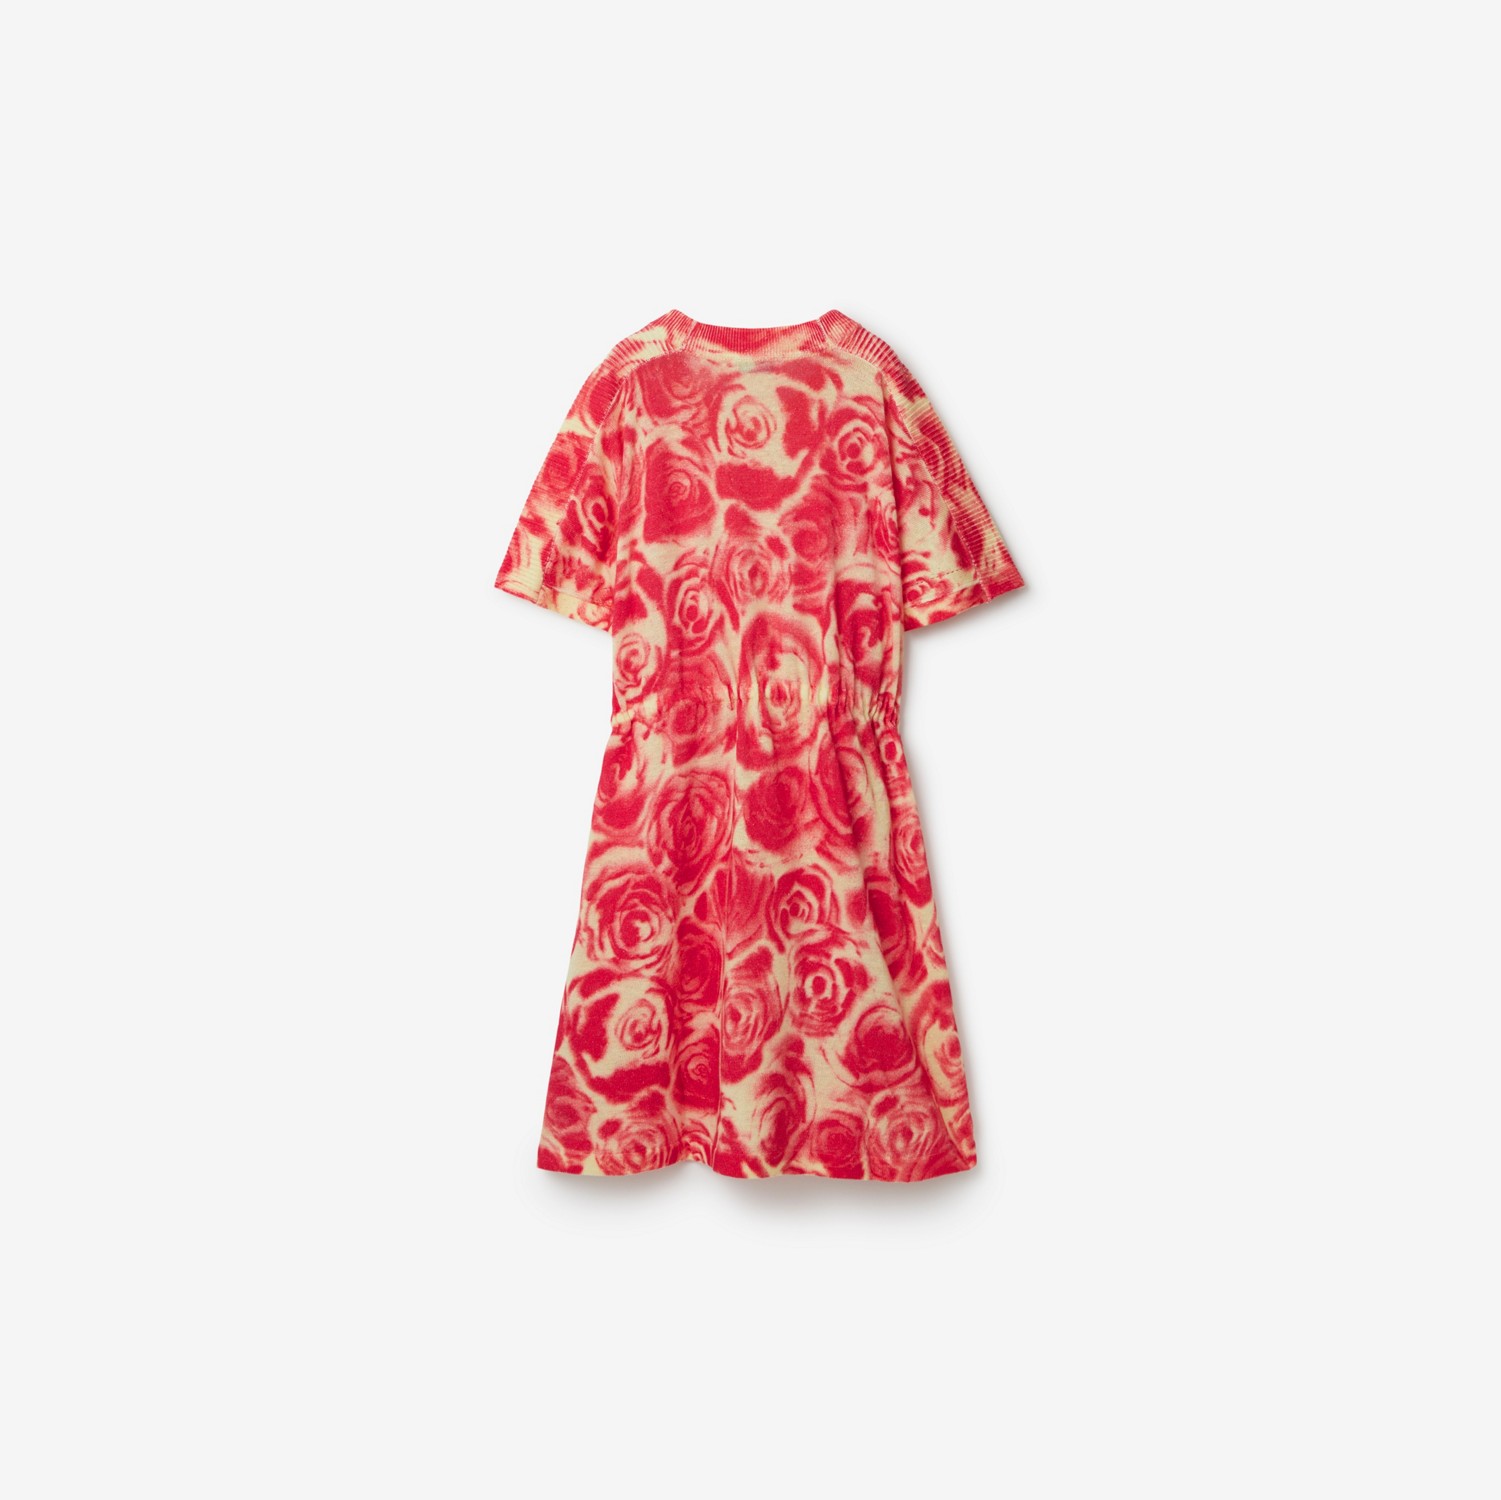 Leinen-Baumwoll-Kleid mit Rosenmuster